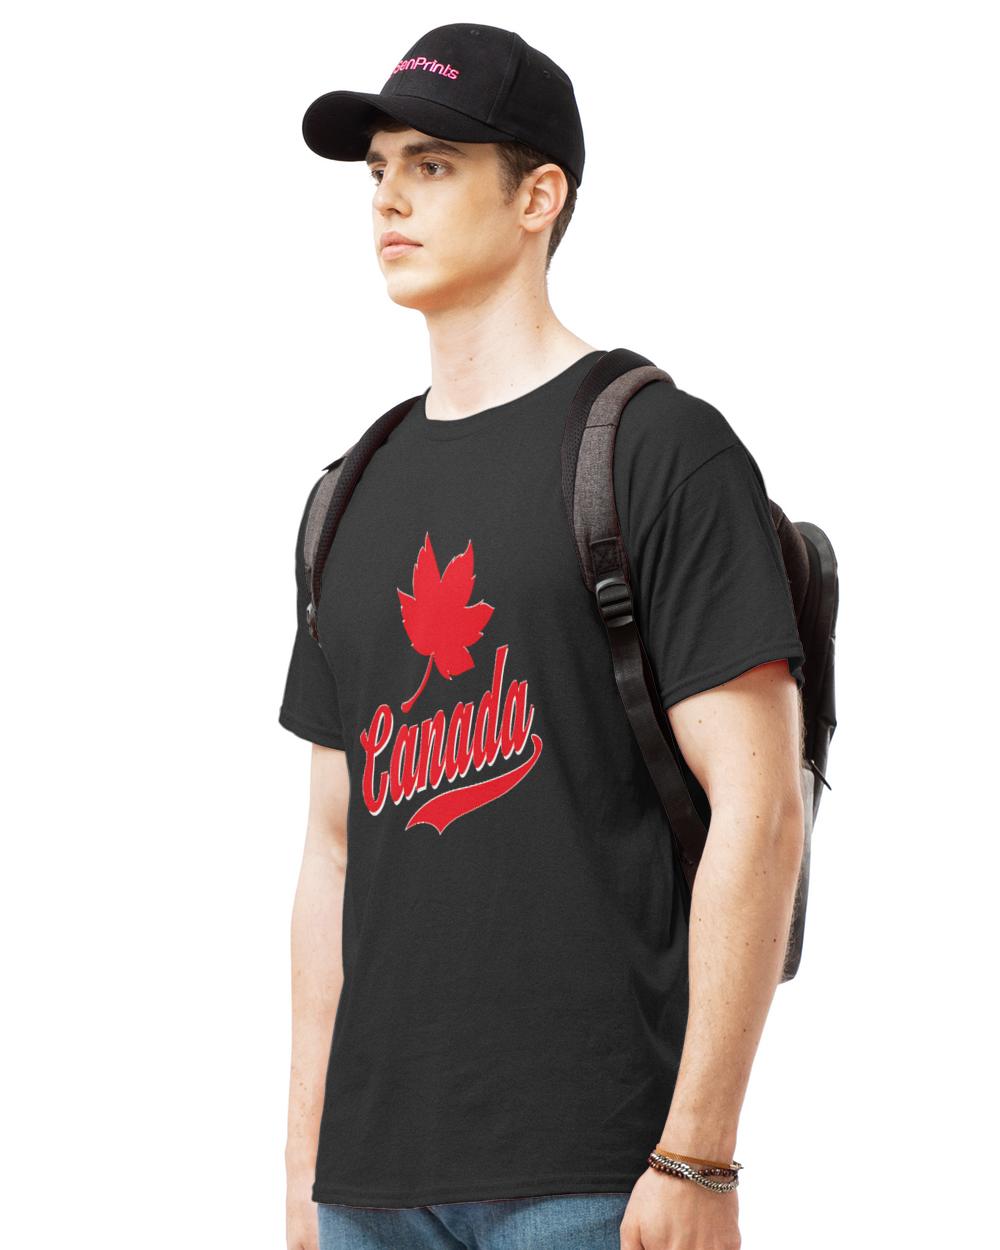 Canada  Shirt Canadian Maple Leaf Canada Lover Canada  305